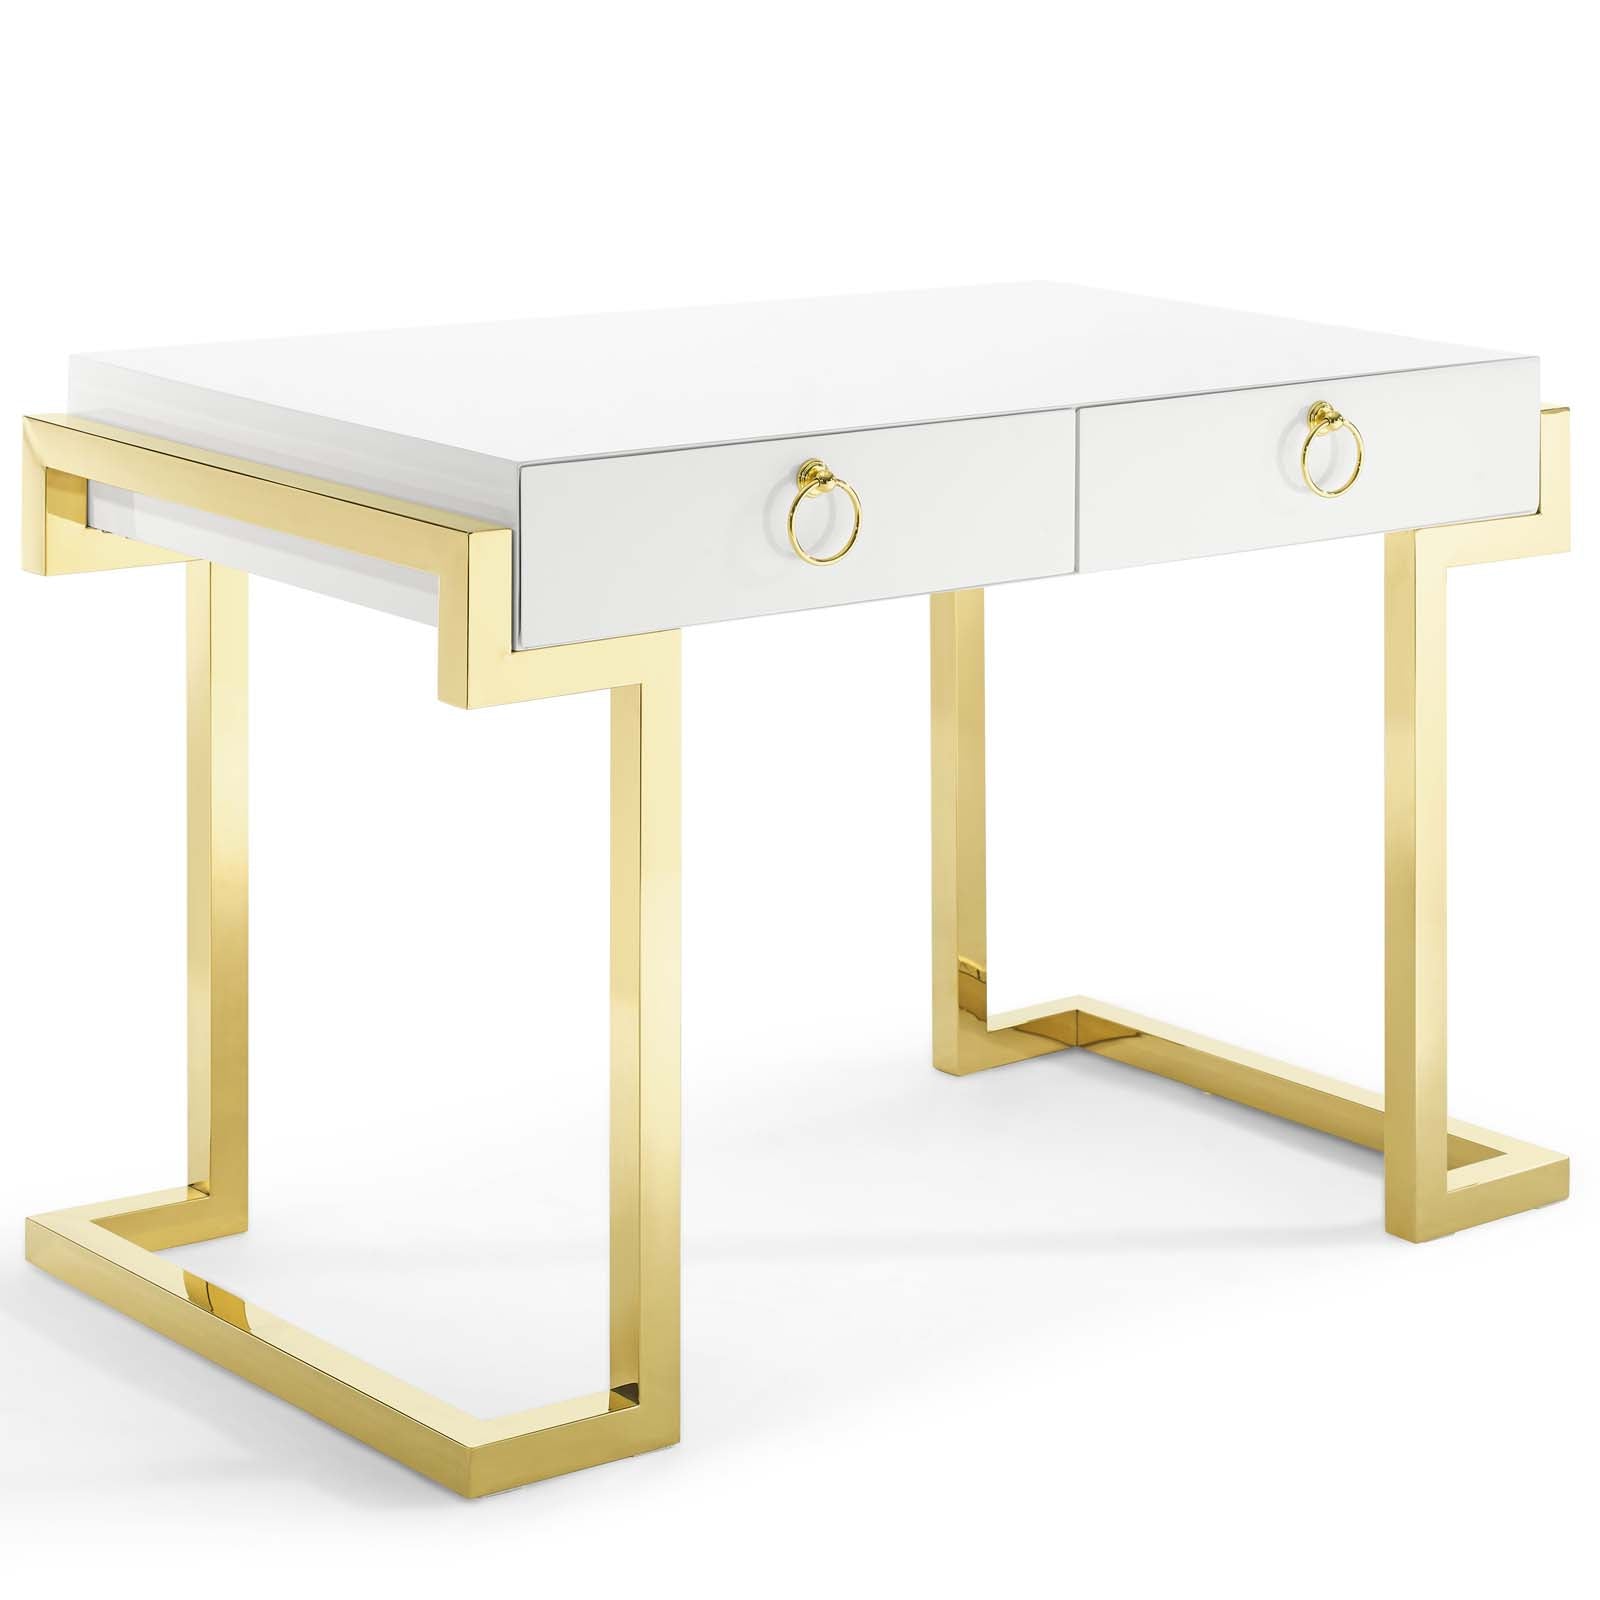 Modway Desks - Ring Office Desk Gold & White